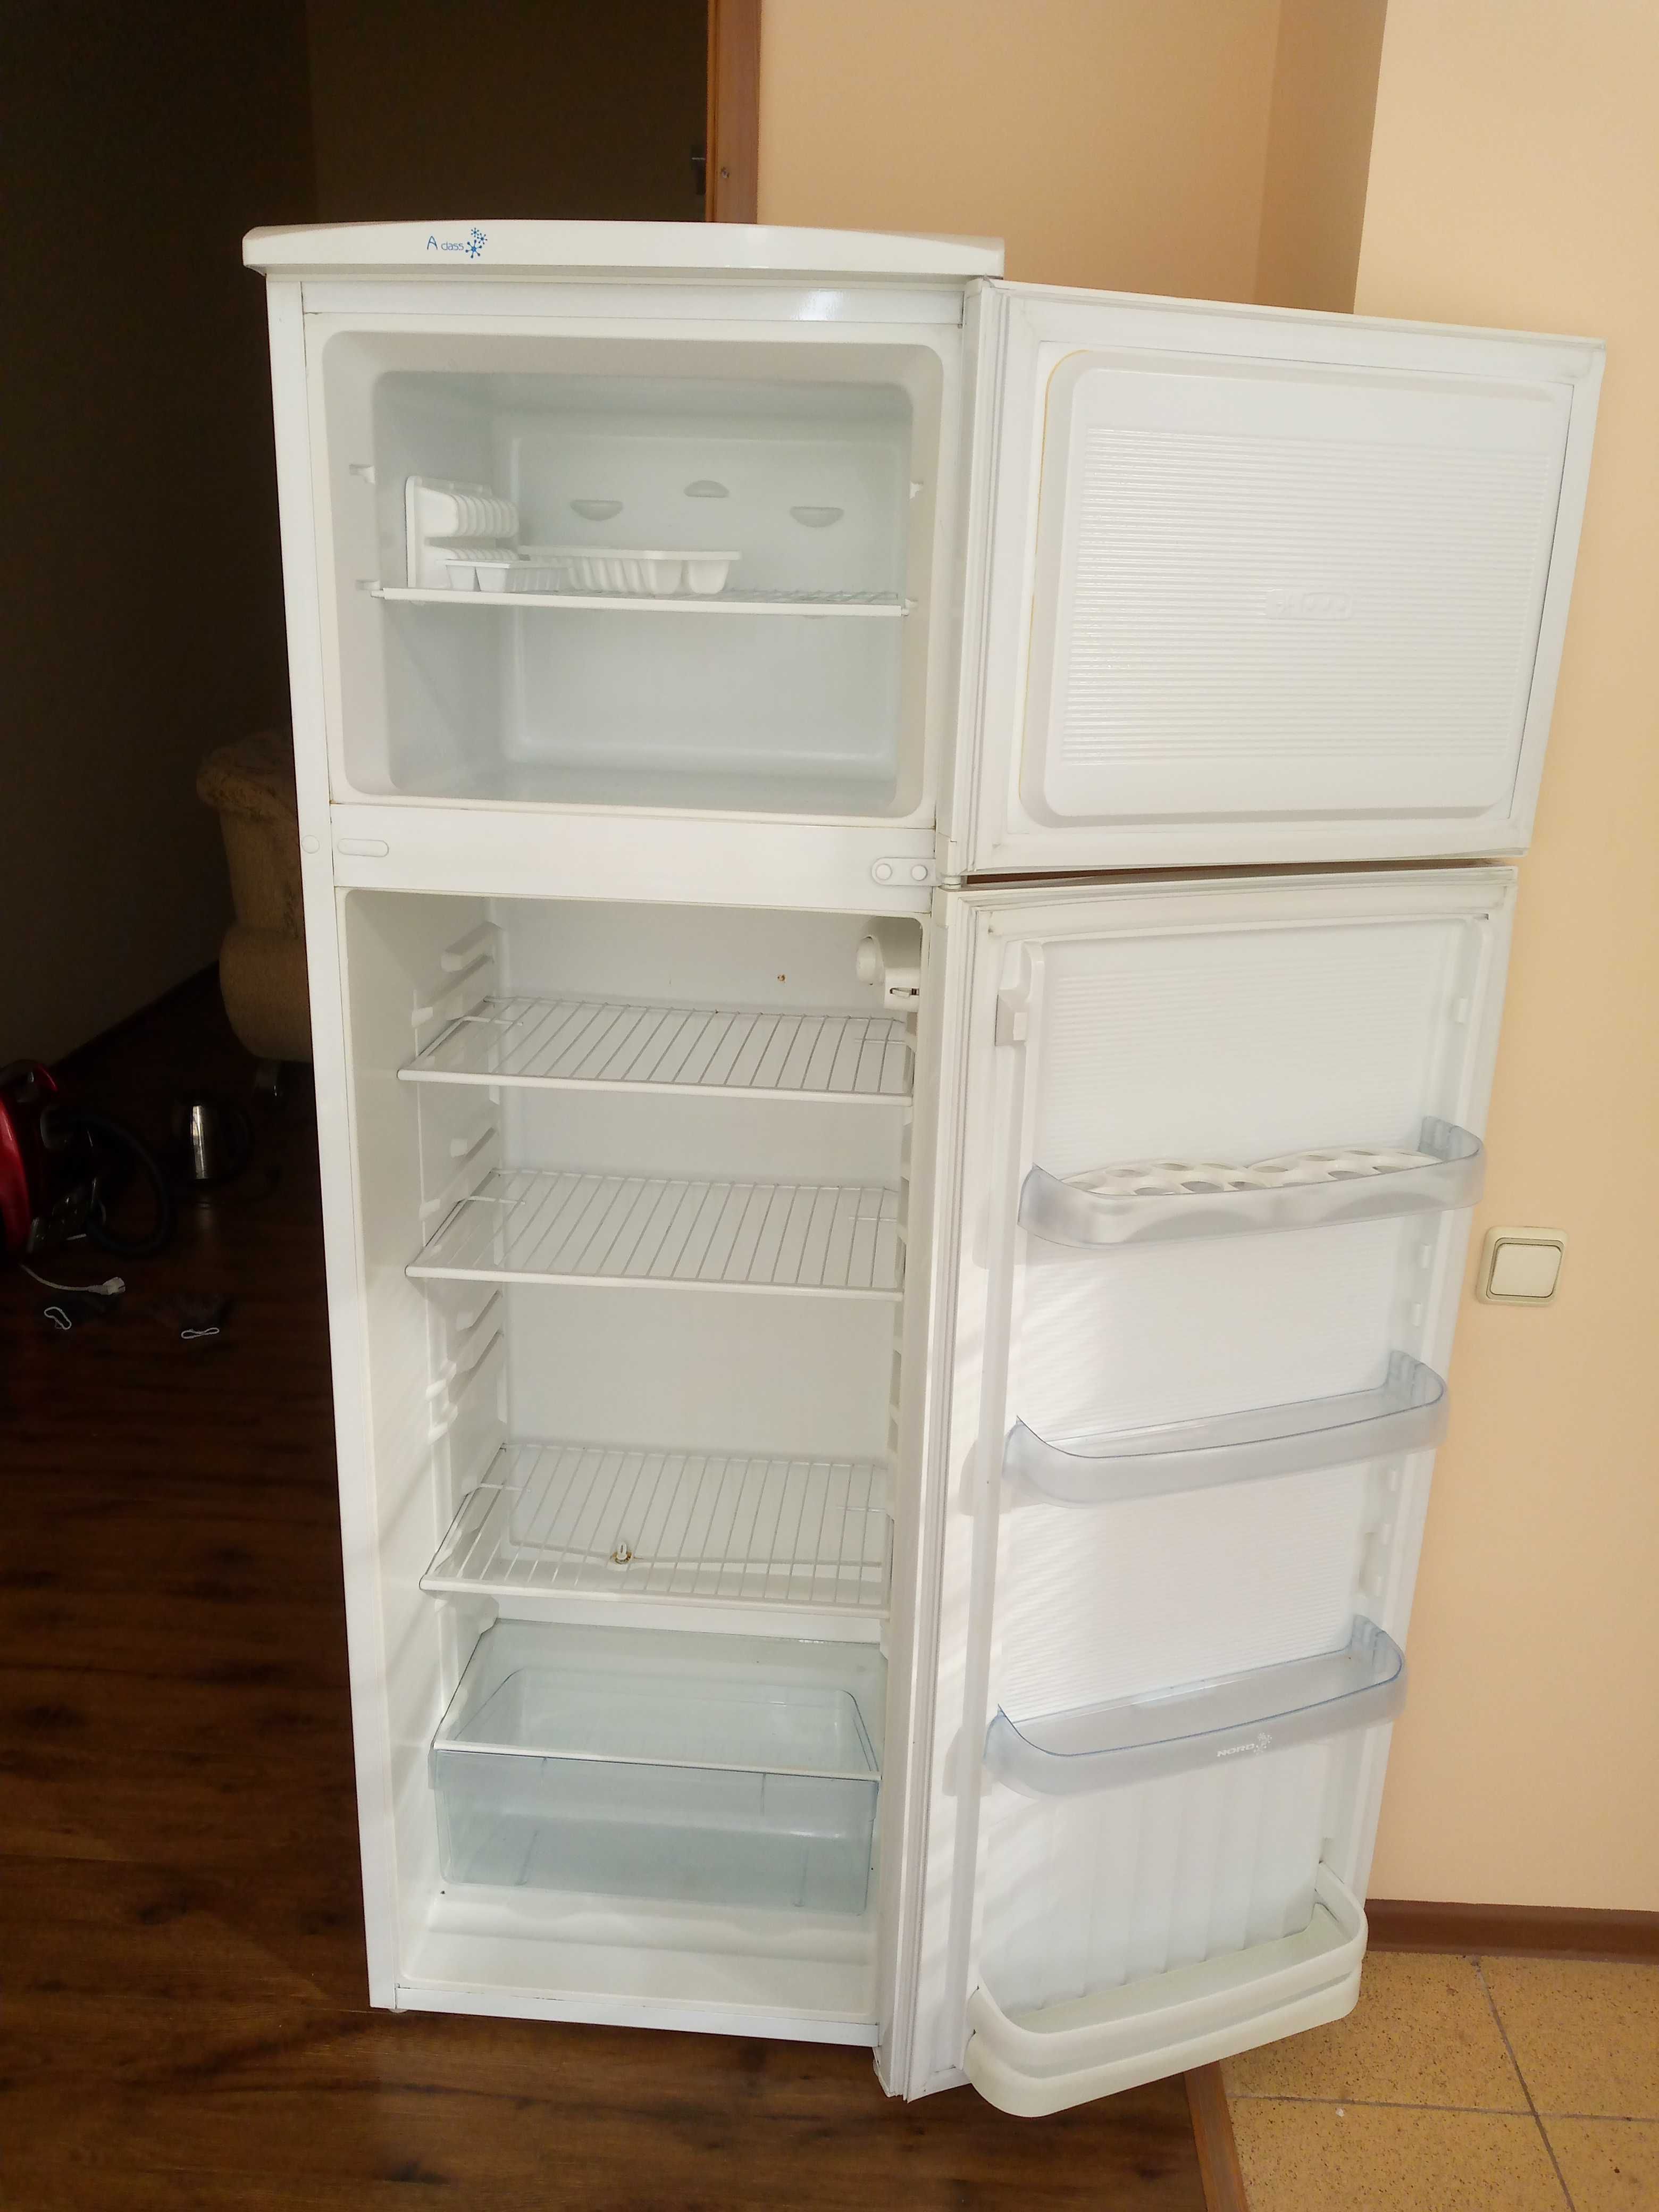 Холодильник большой NORD, европейское качество,высота 1,75м объем 330л